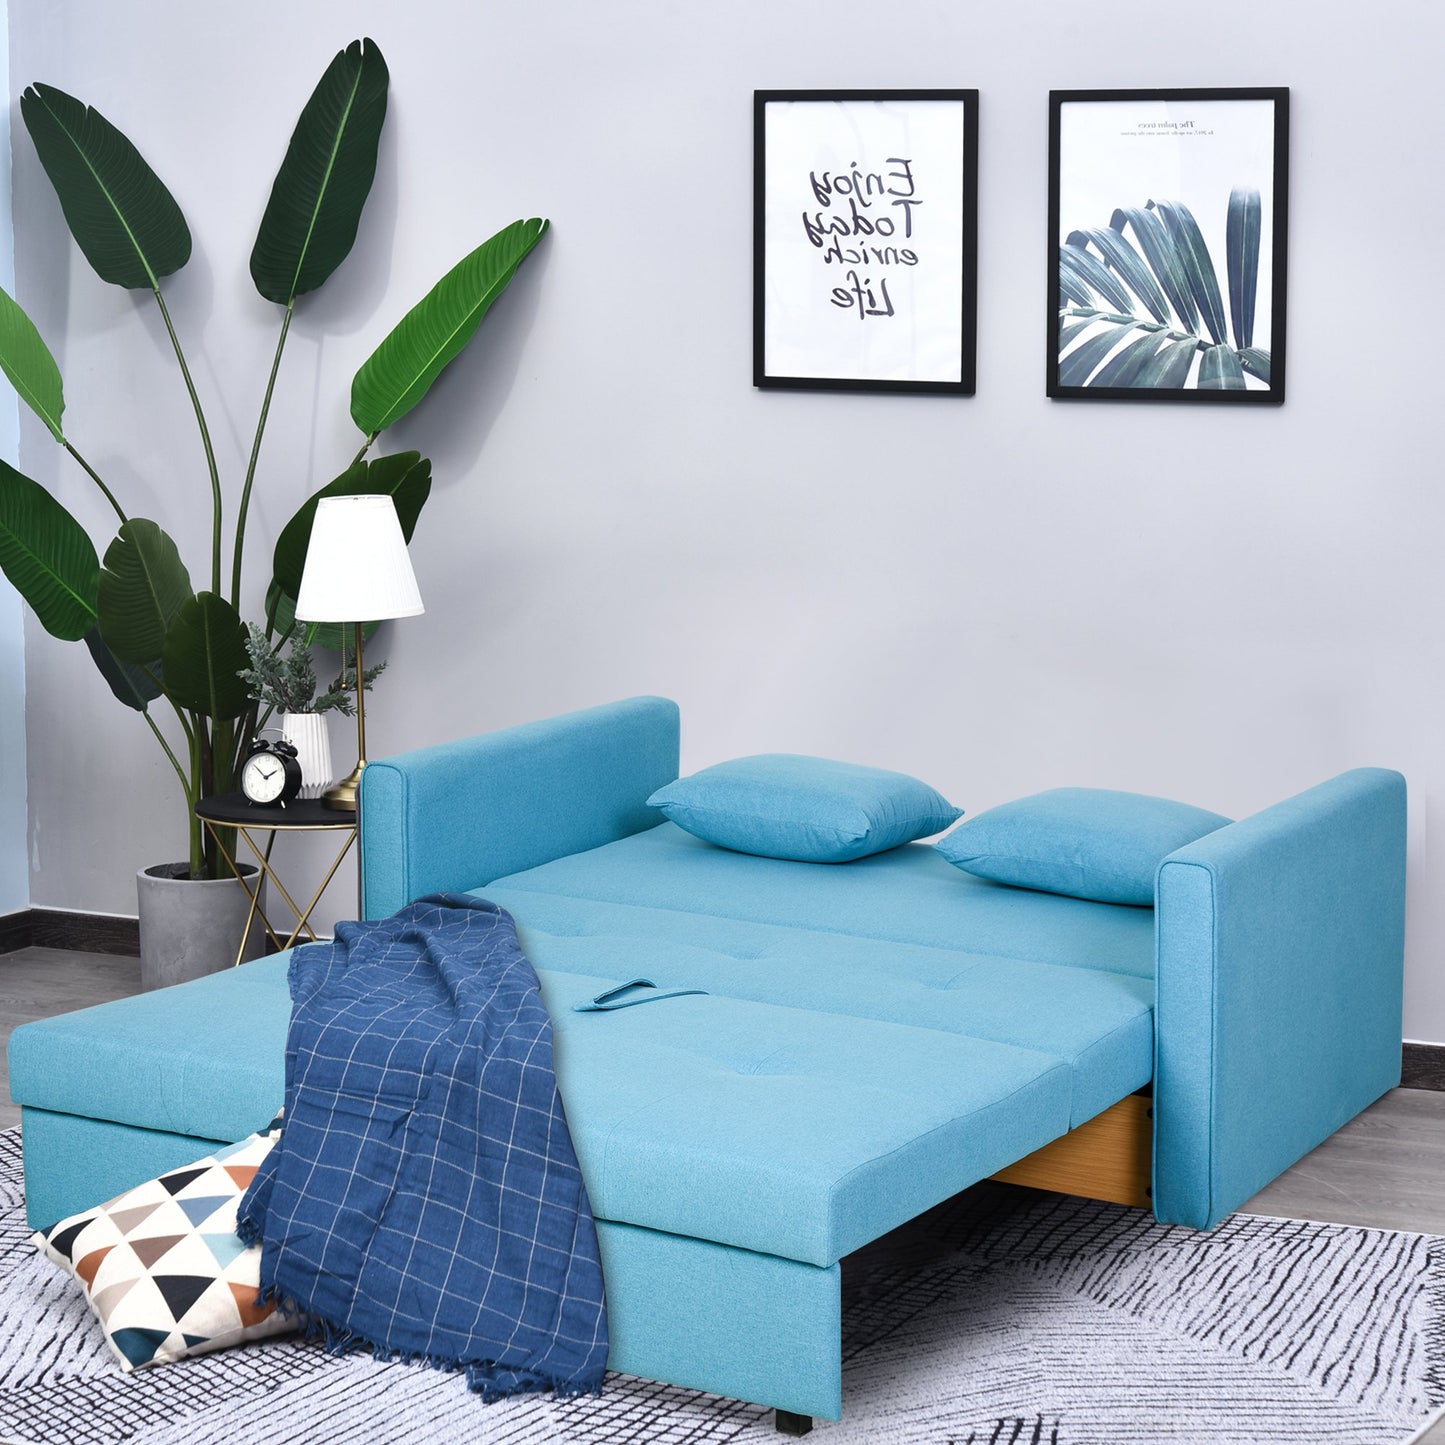 HOMCOM Polycotton 2-Seater Sofa Bed w/ Pillows Blue